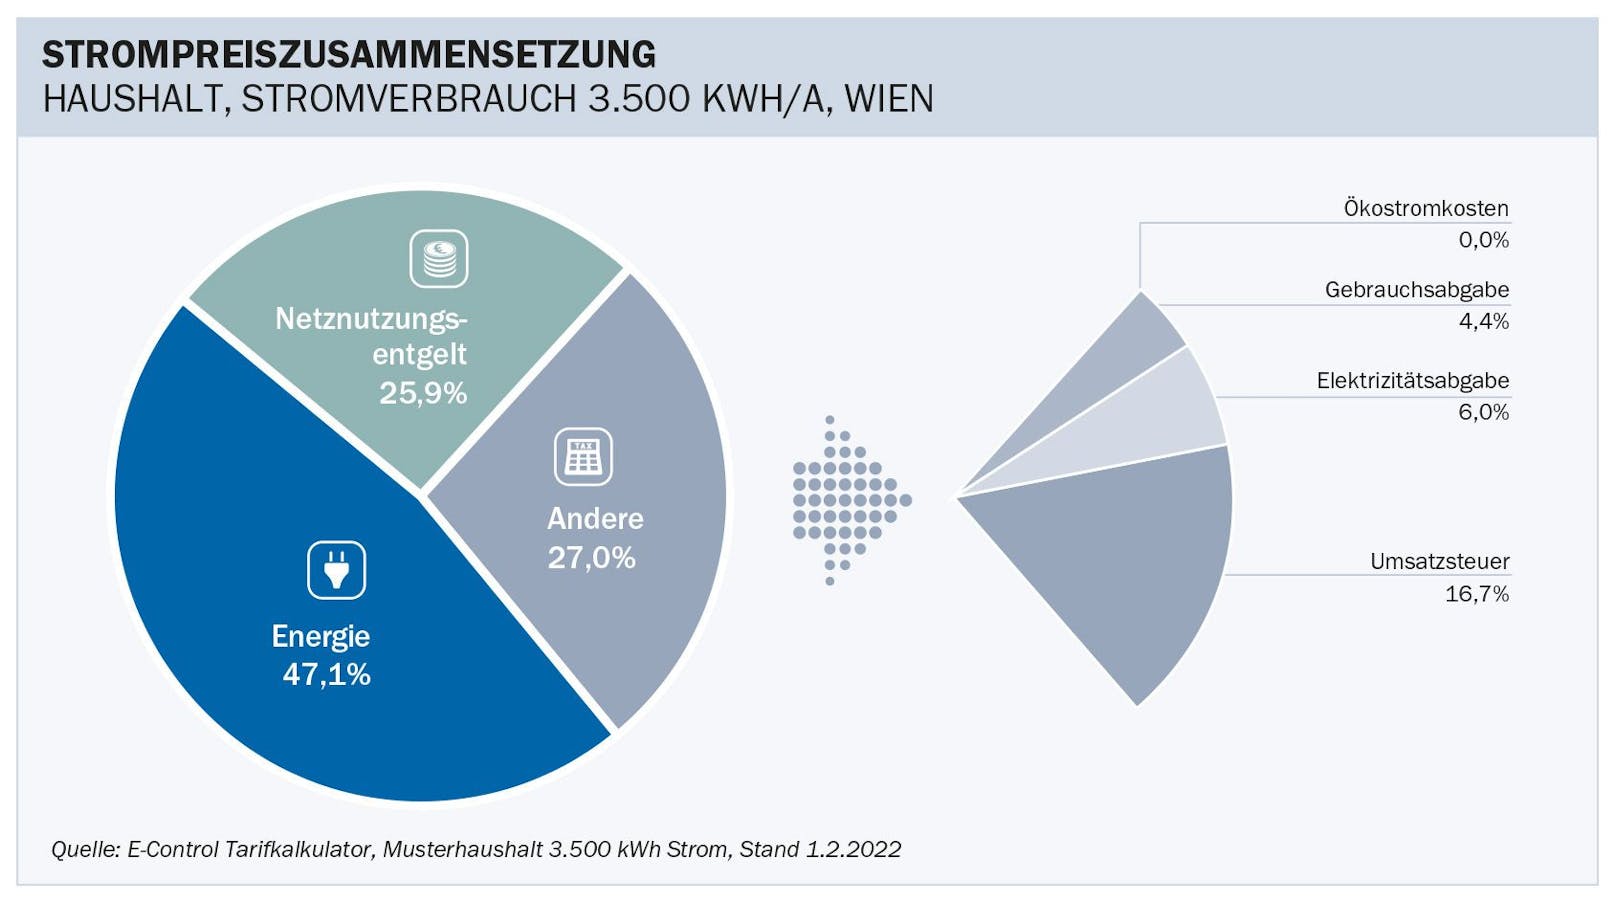 Strompreiszusammensetzung eines Wiener Haushaltes, E-Control-Beispiel mit Stand 1.2.2022.